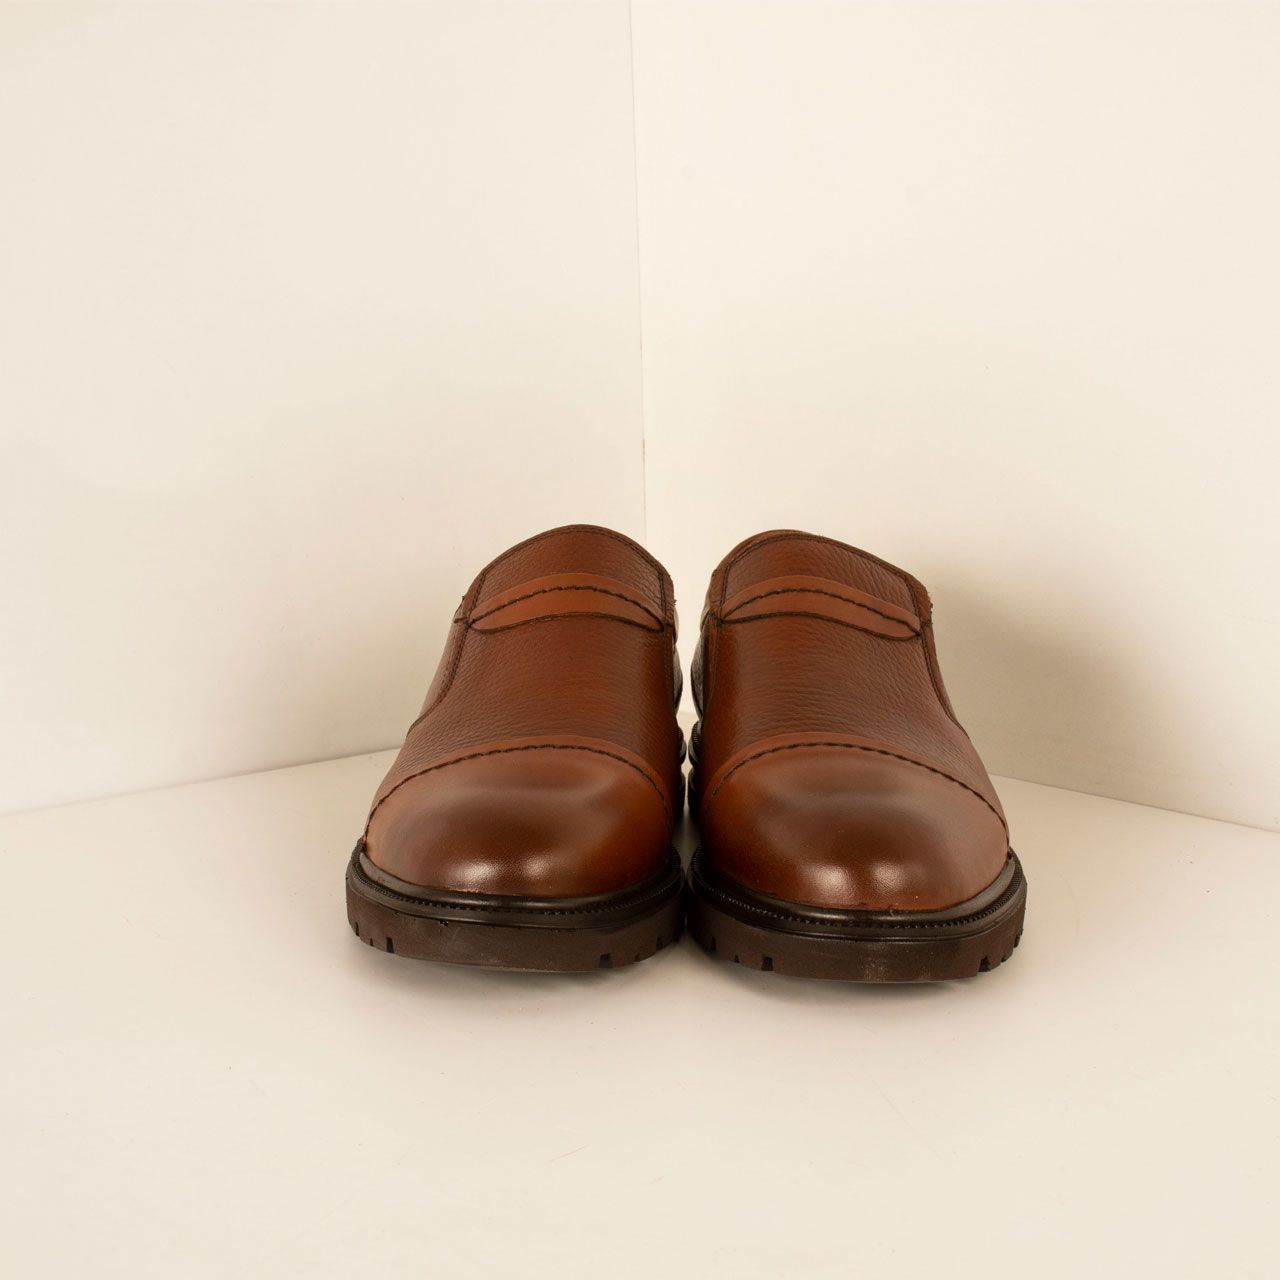  کفش روزمره مردانه پارینه چرم مدل SHO199-1 -  - 7